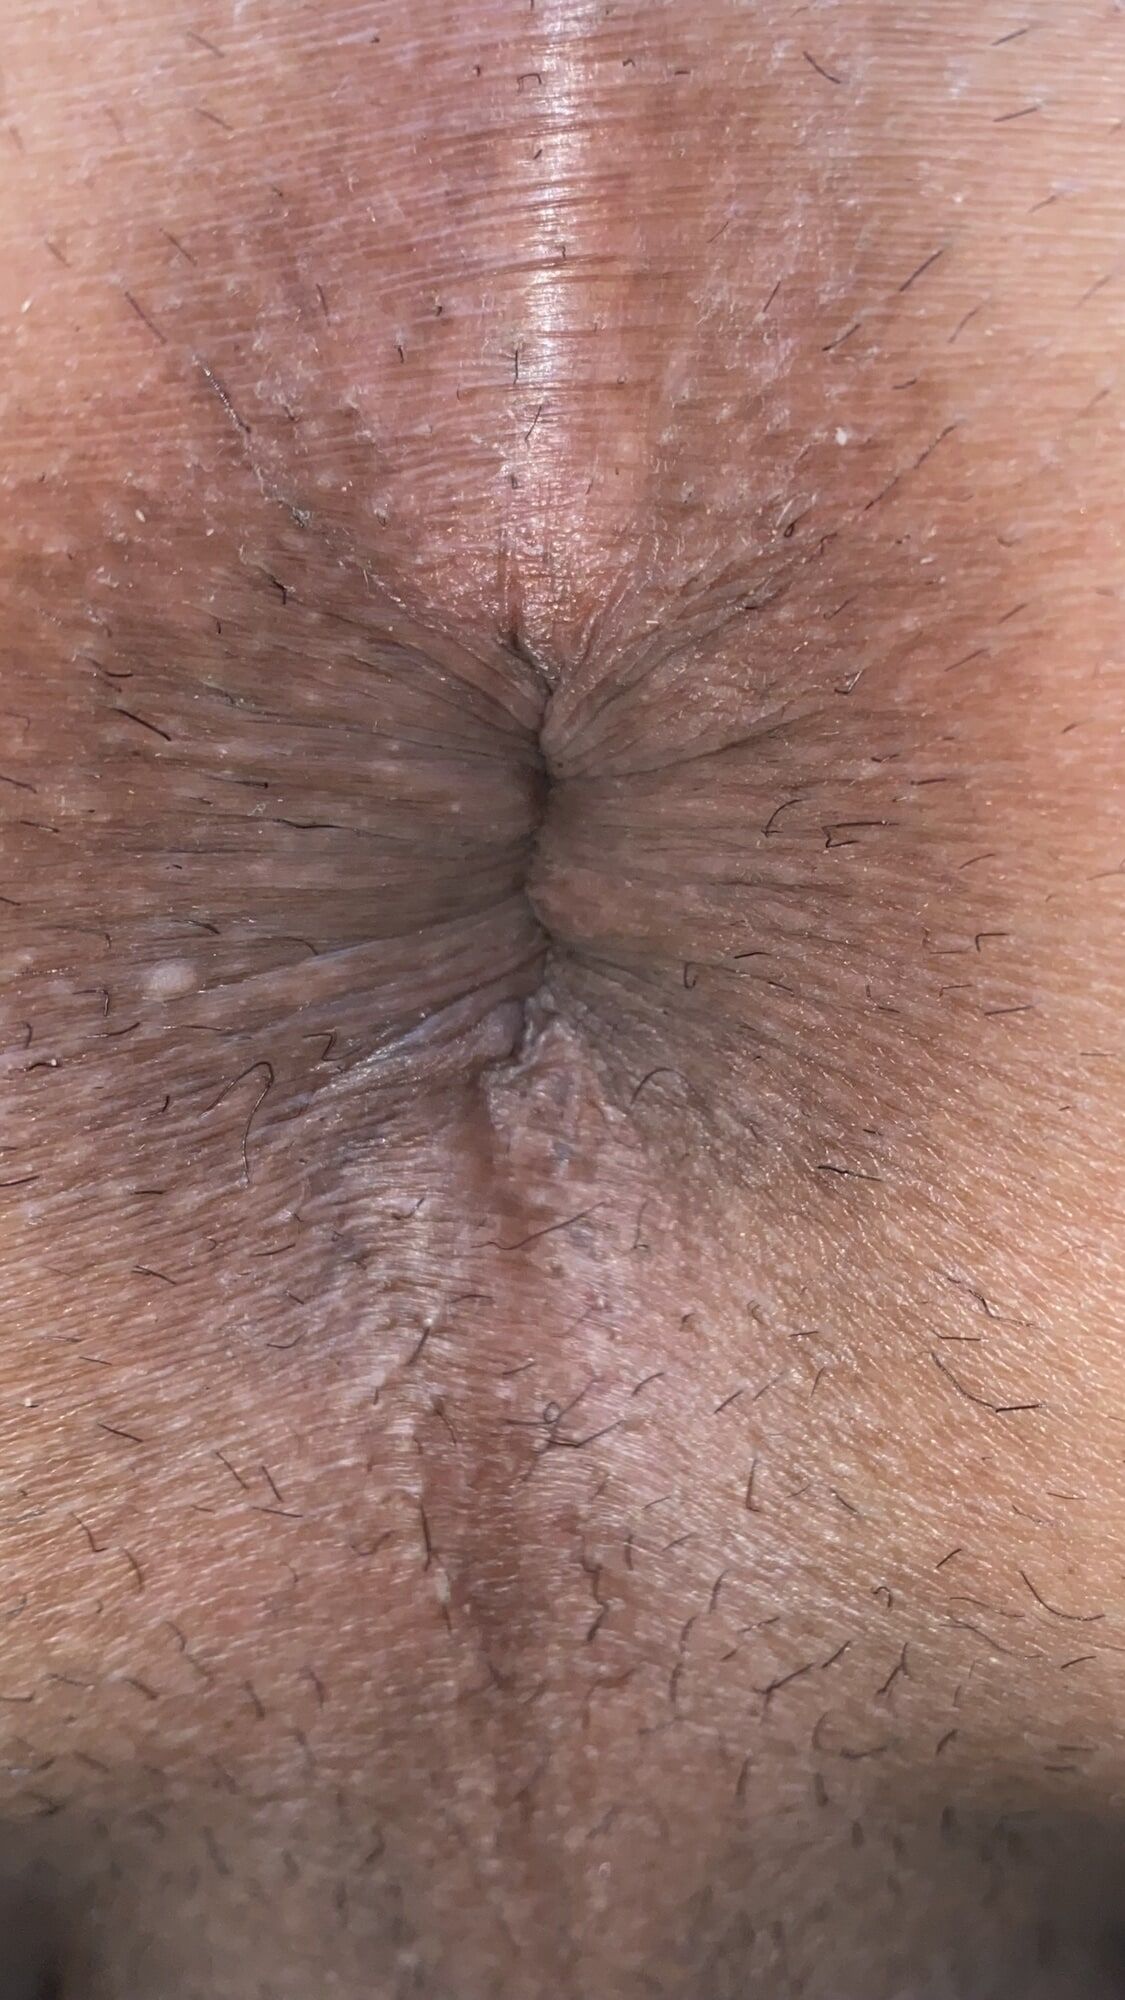 Close-up of a man's anus #13